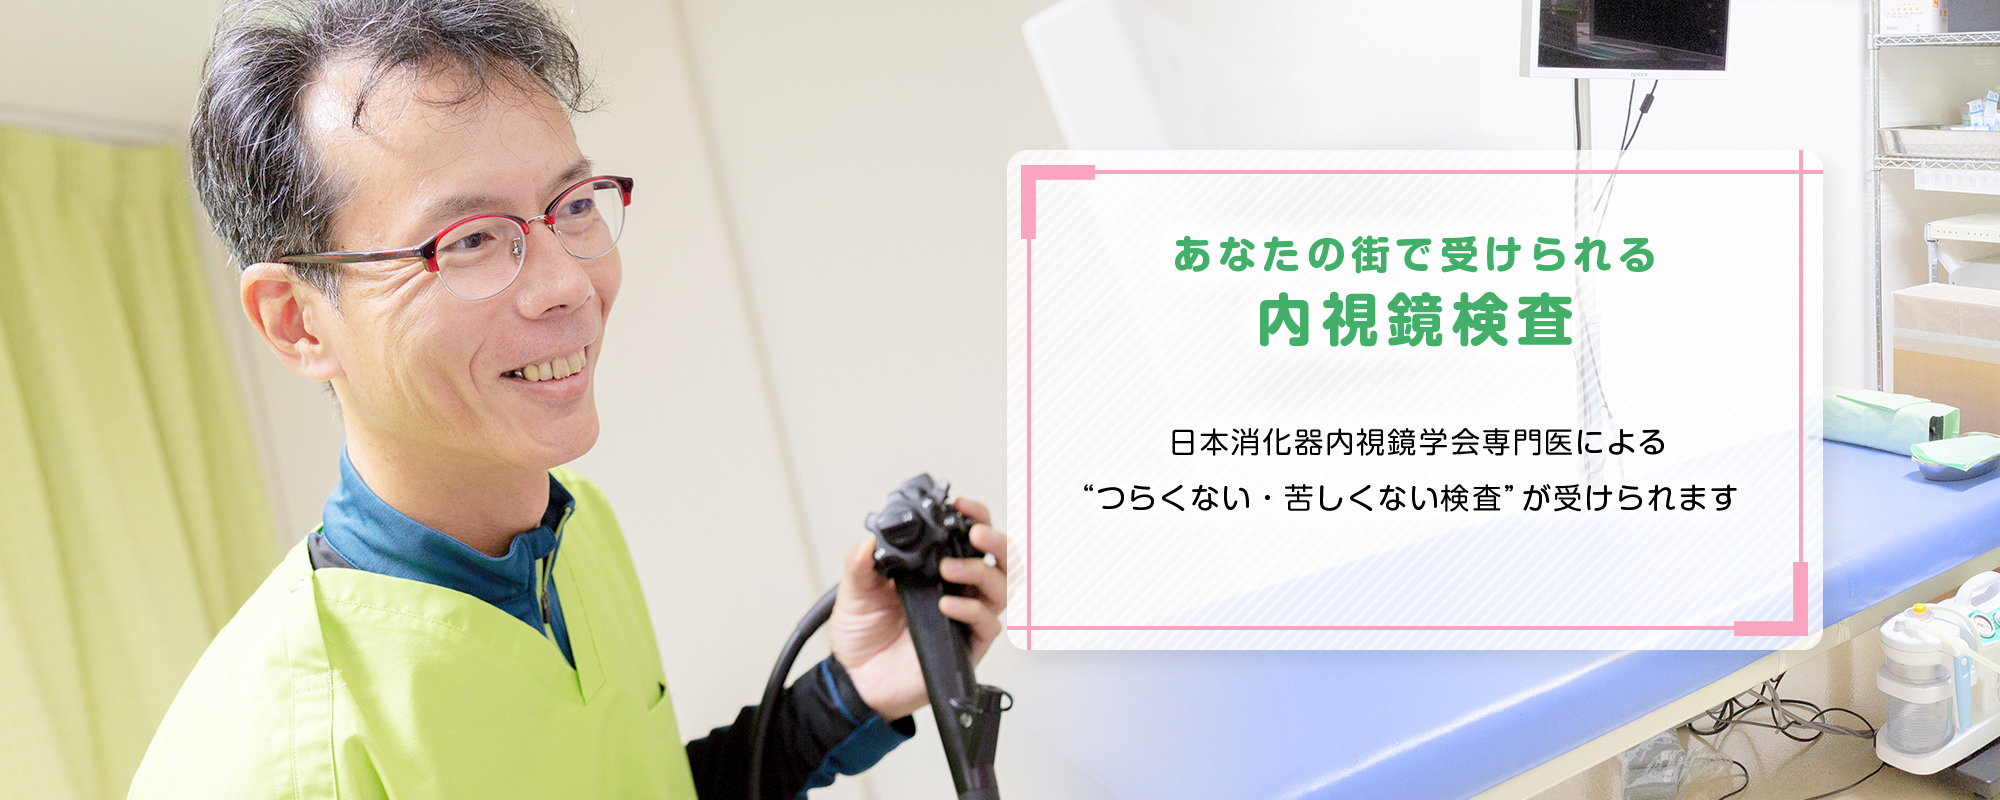 あなたの街で受けられる内視鏡検査 日本消化器内視鏡学会専門医による“つらくない・苦しくない検査”が受けられます